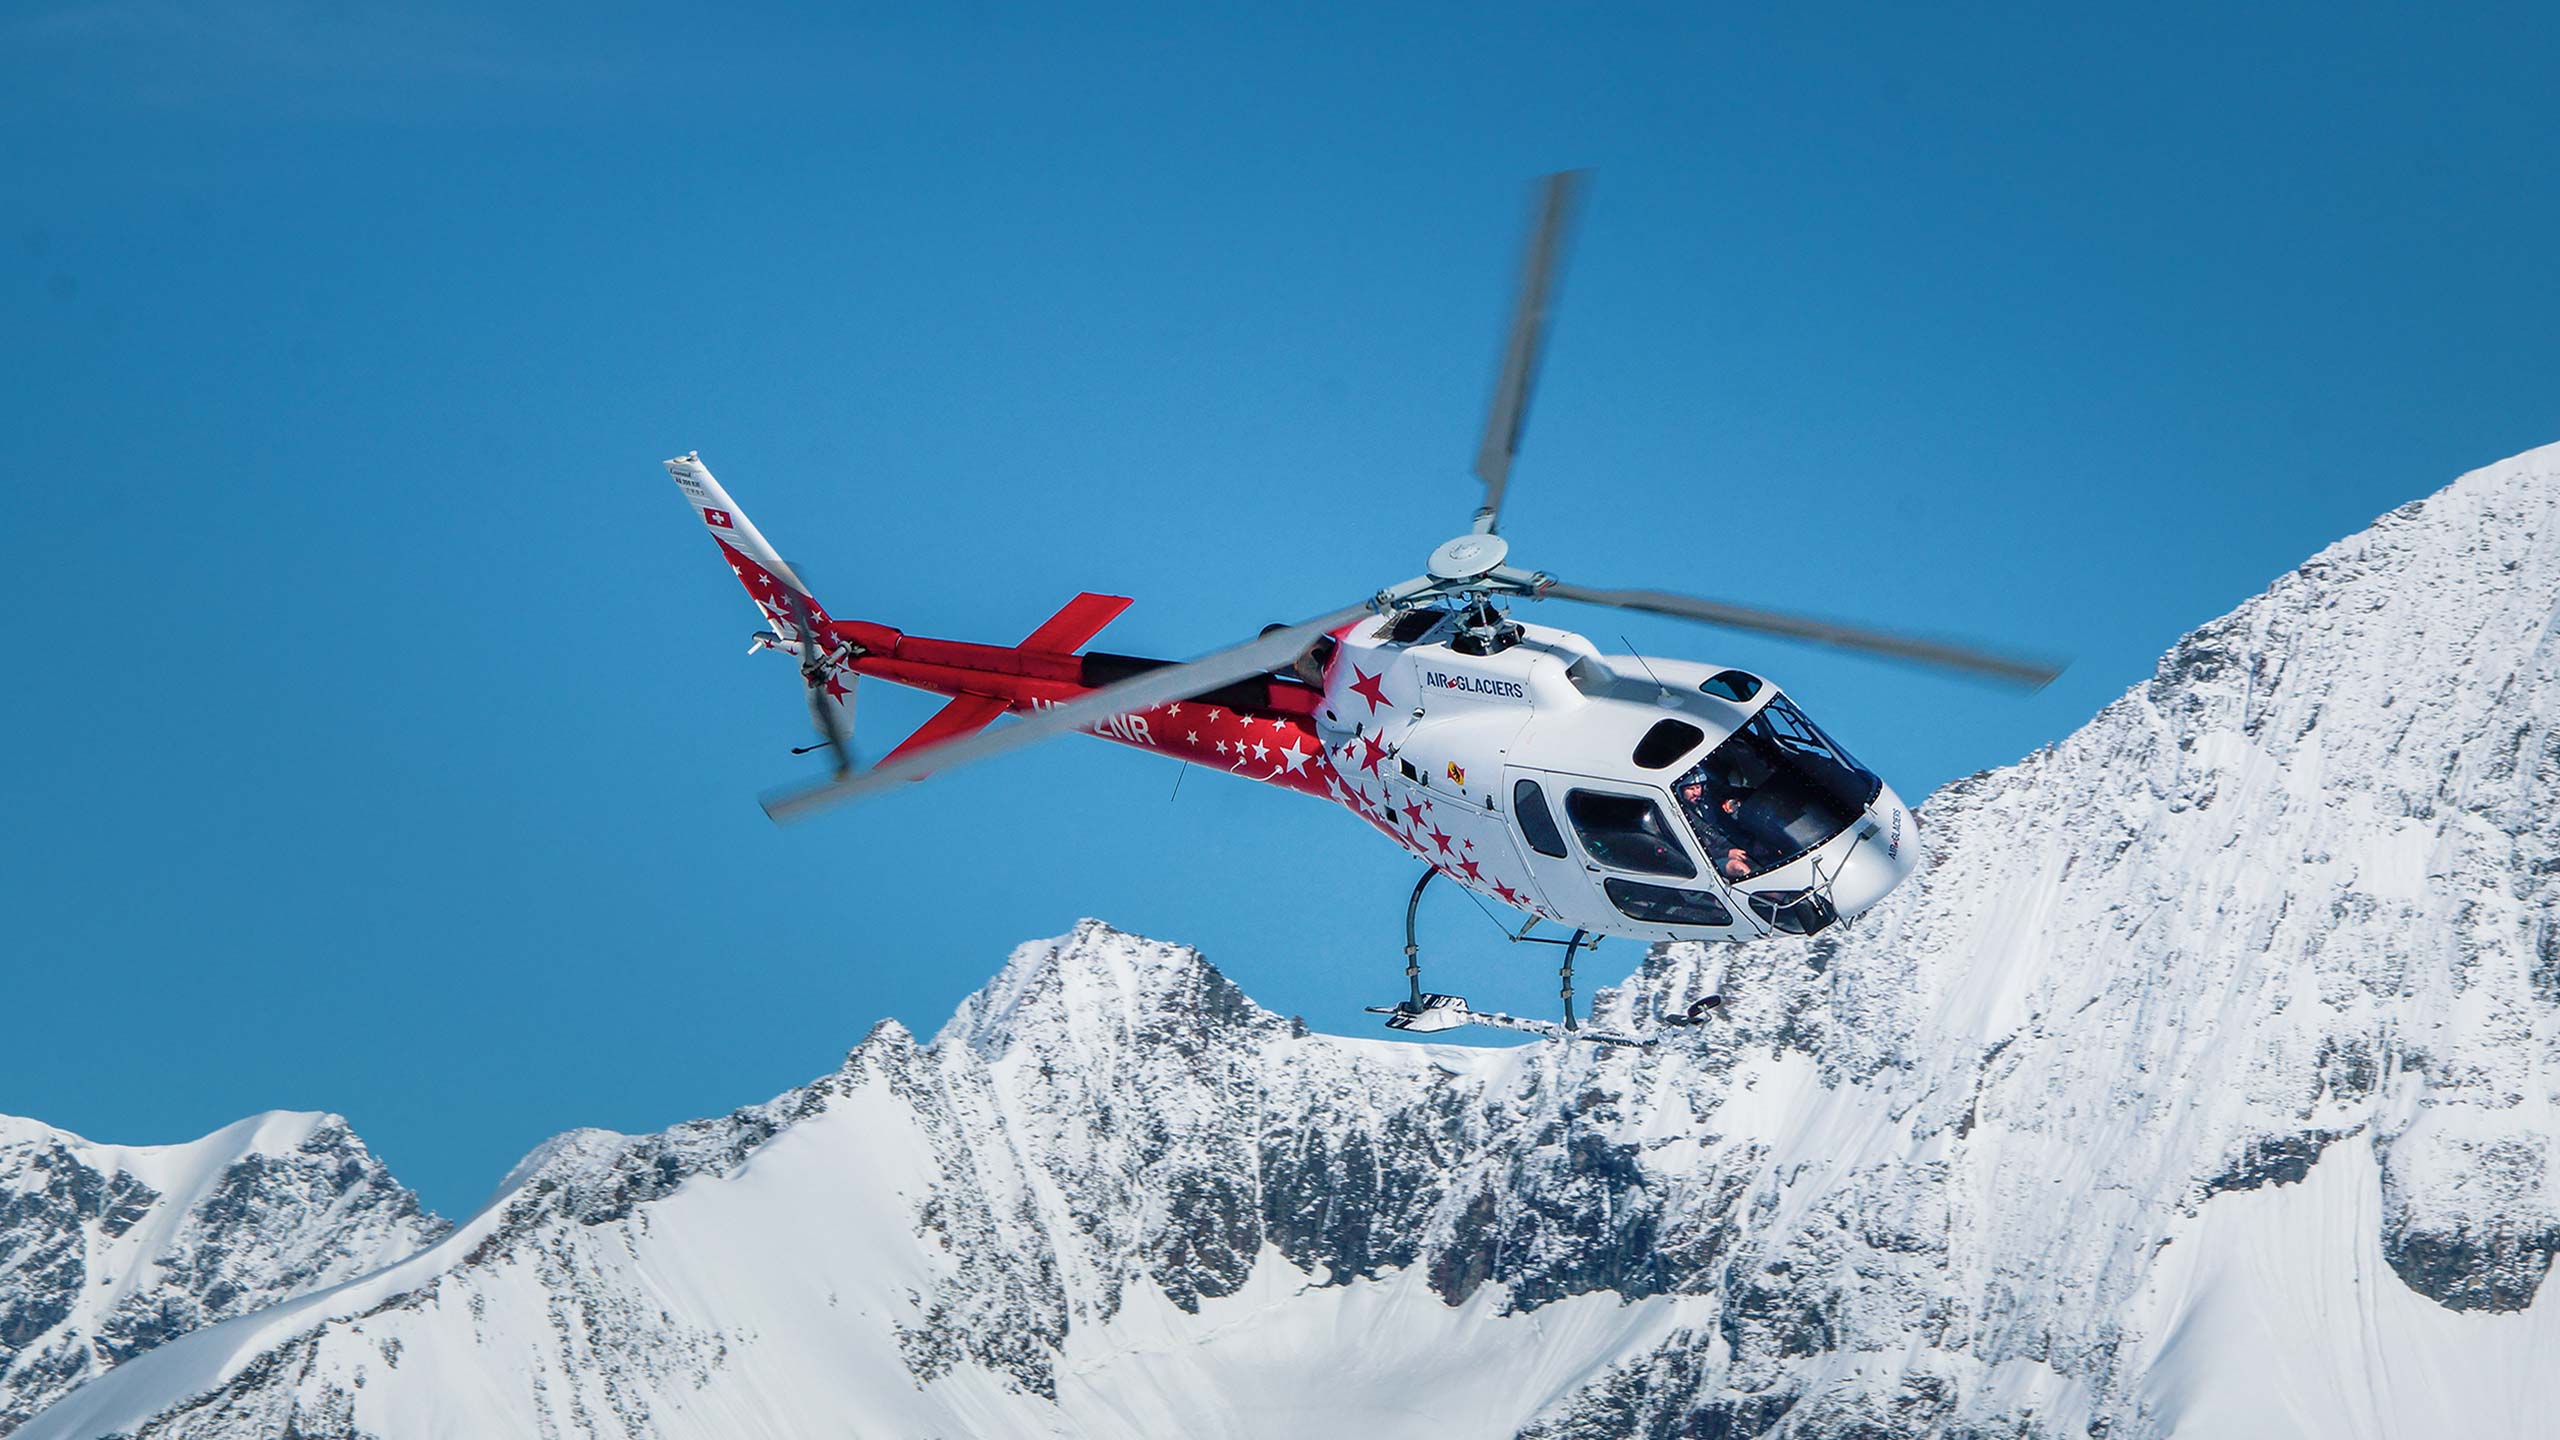 air-glaciers-helikopter-flug-berge-schnee-bild-3.jpg